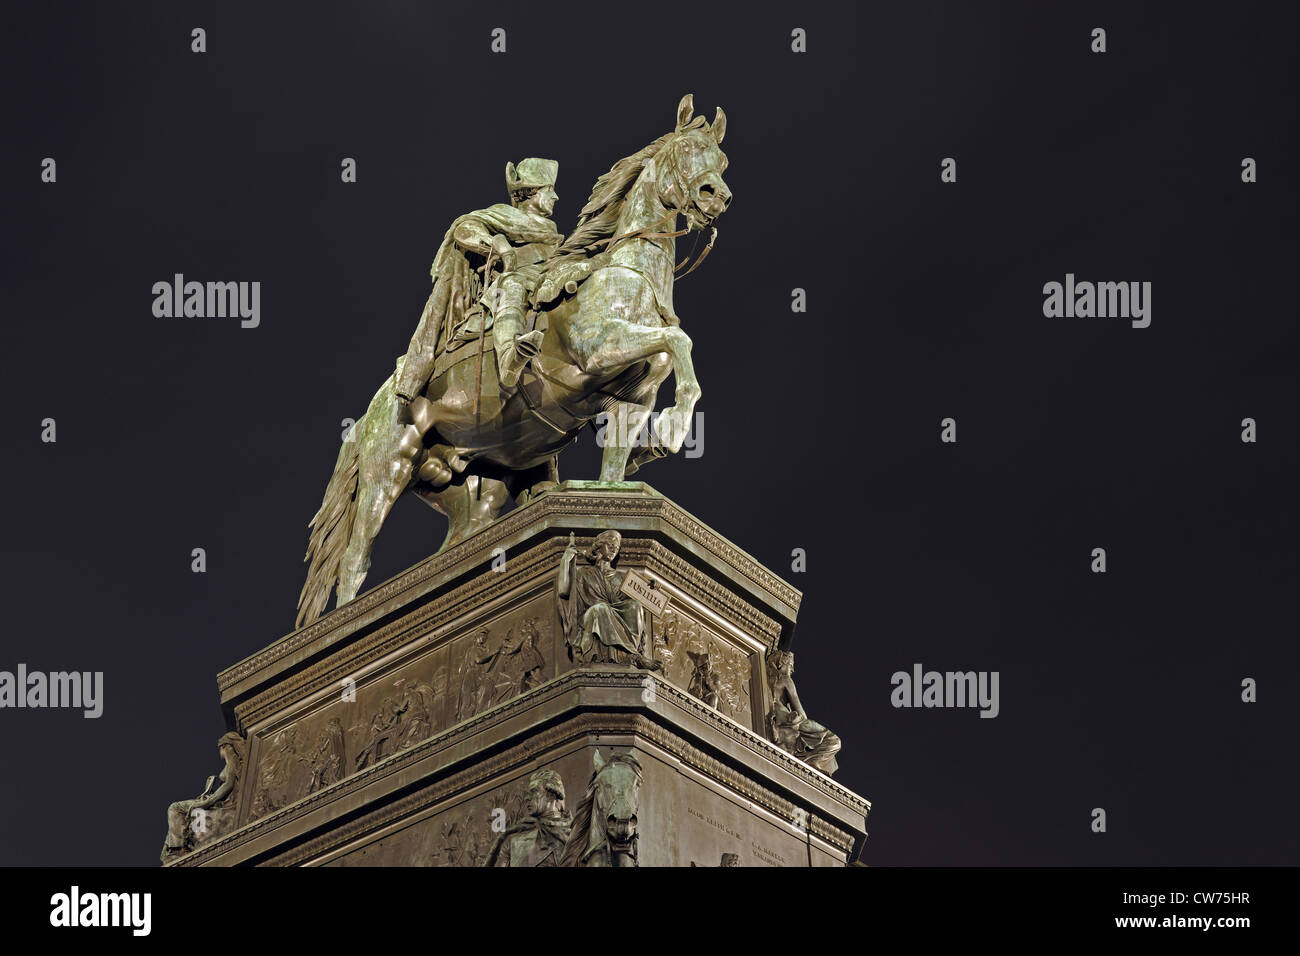 Escultura ecuestre de Federico II de Prusia en el boulevard Unter den Linden, Alemania, Berlín Foto de stock